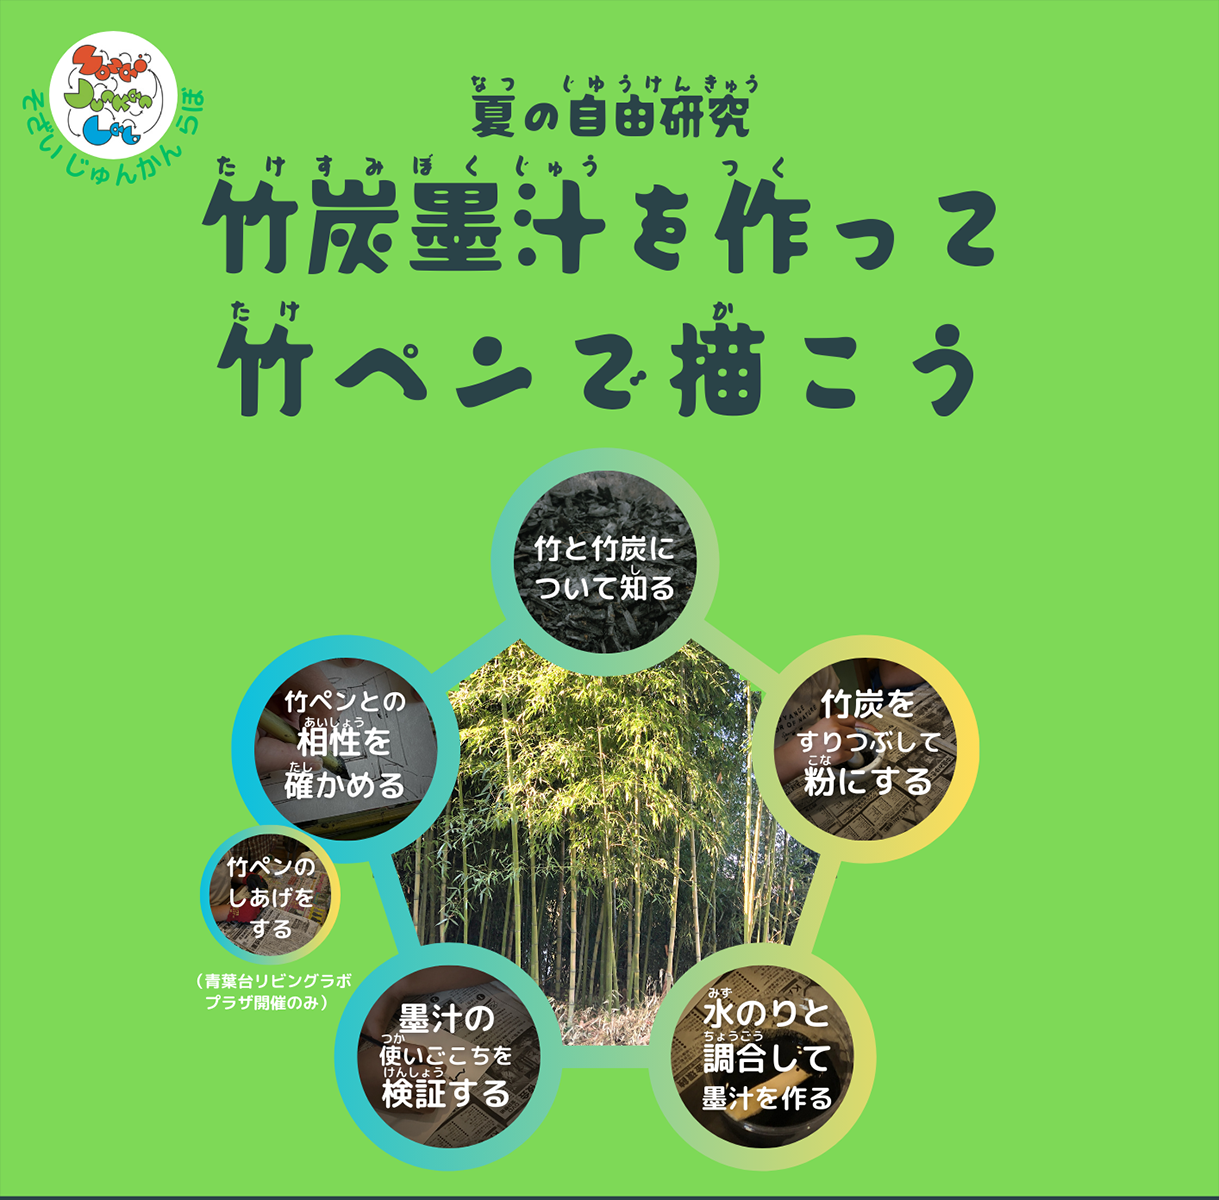 SOZAi循環Labが「夏の自由研究 竹炭墨汁を作って竹ペンで描こう」を横浜市緑区および青葉区で開催します